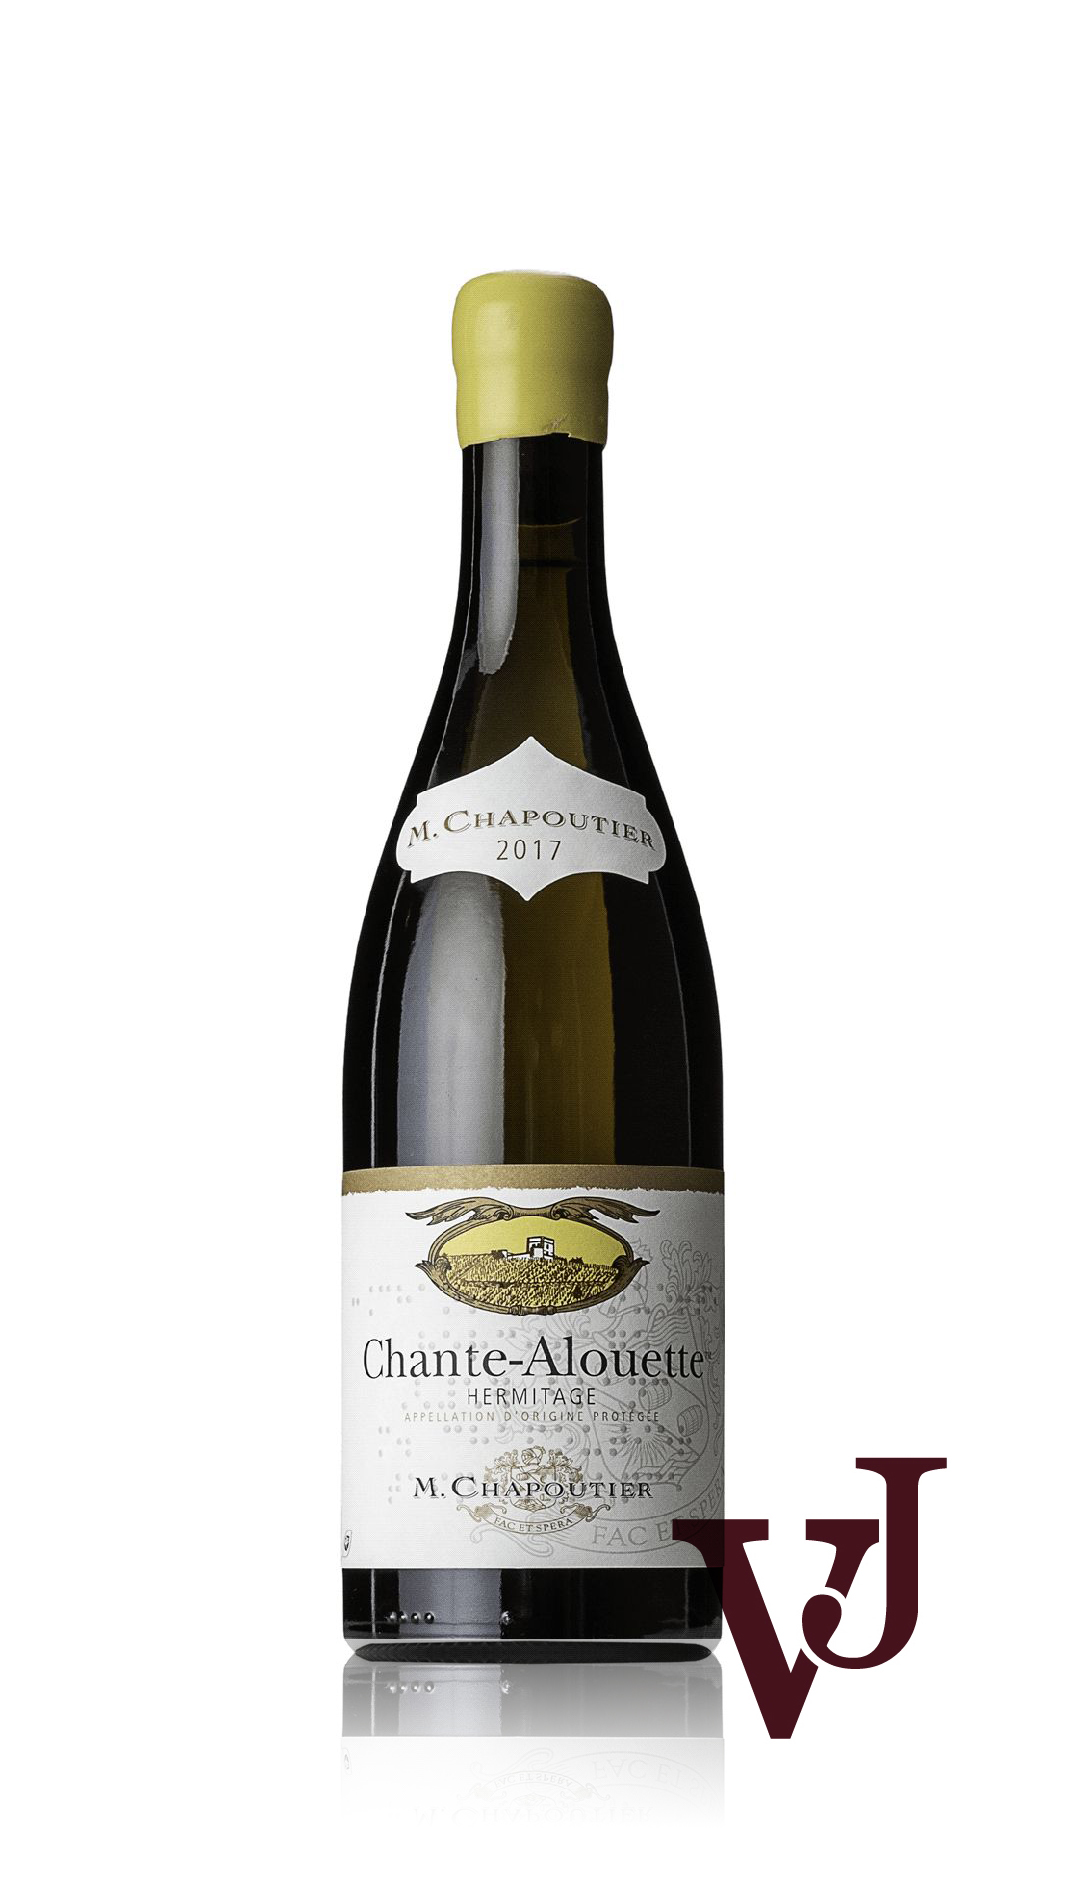 Vitt Vin - Chapoutier artikel nummer 5773501 från producenten M.Chapoutier från området Frankrike